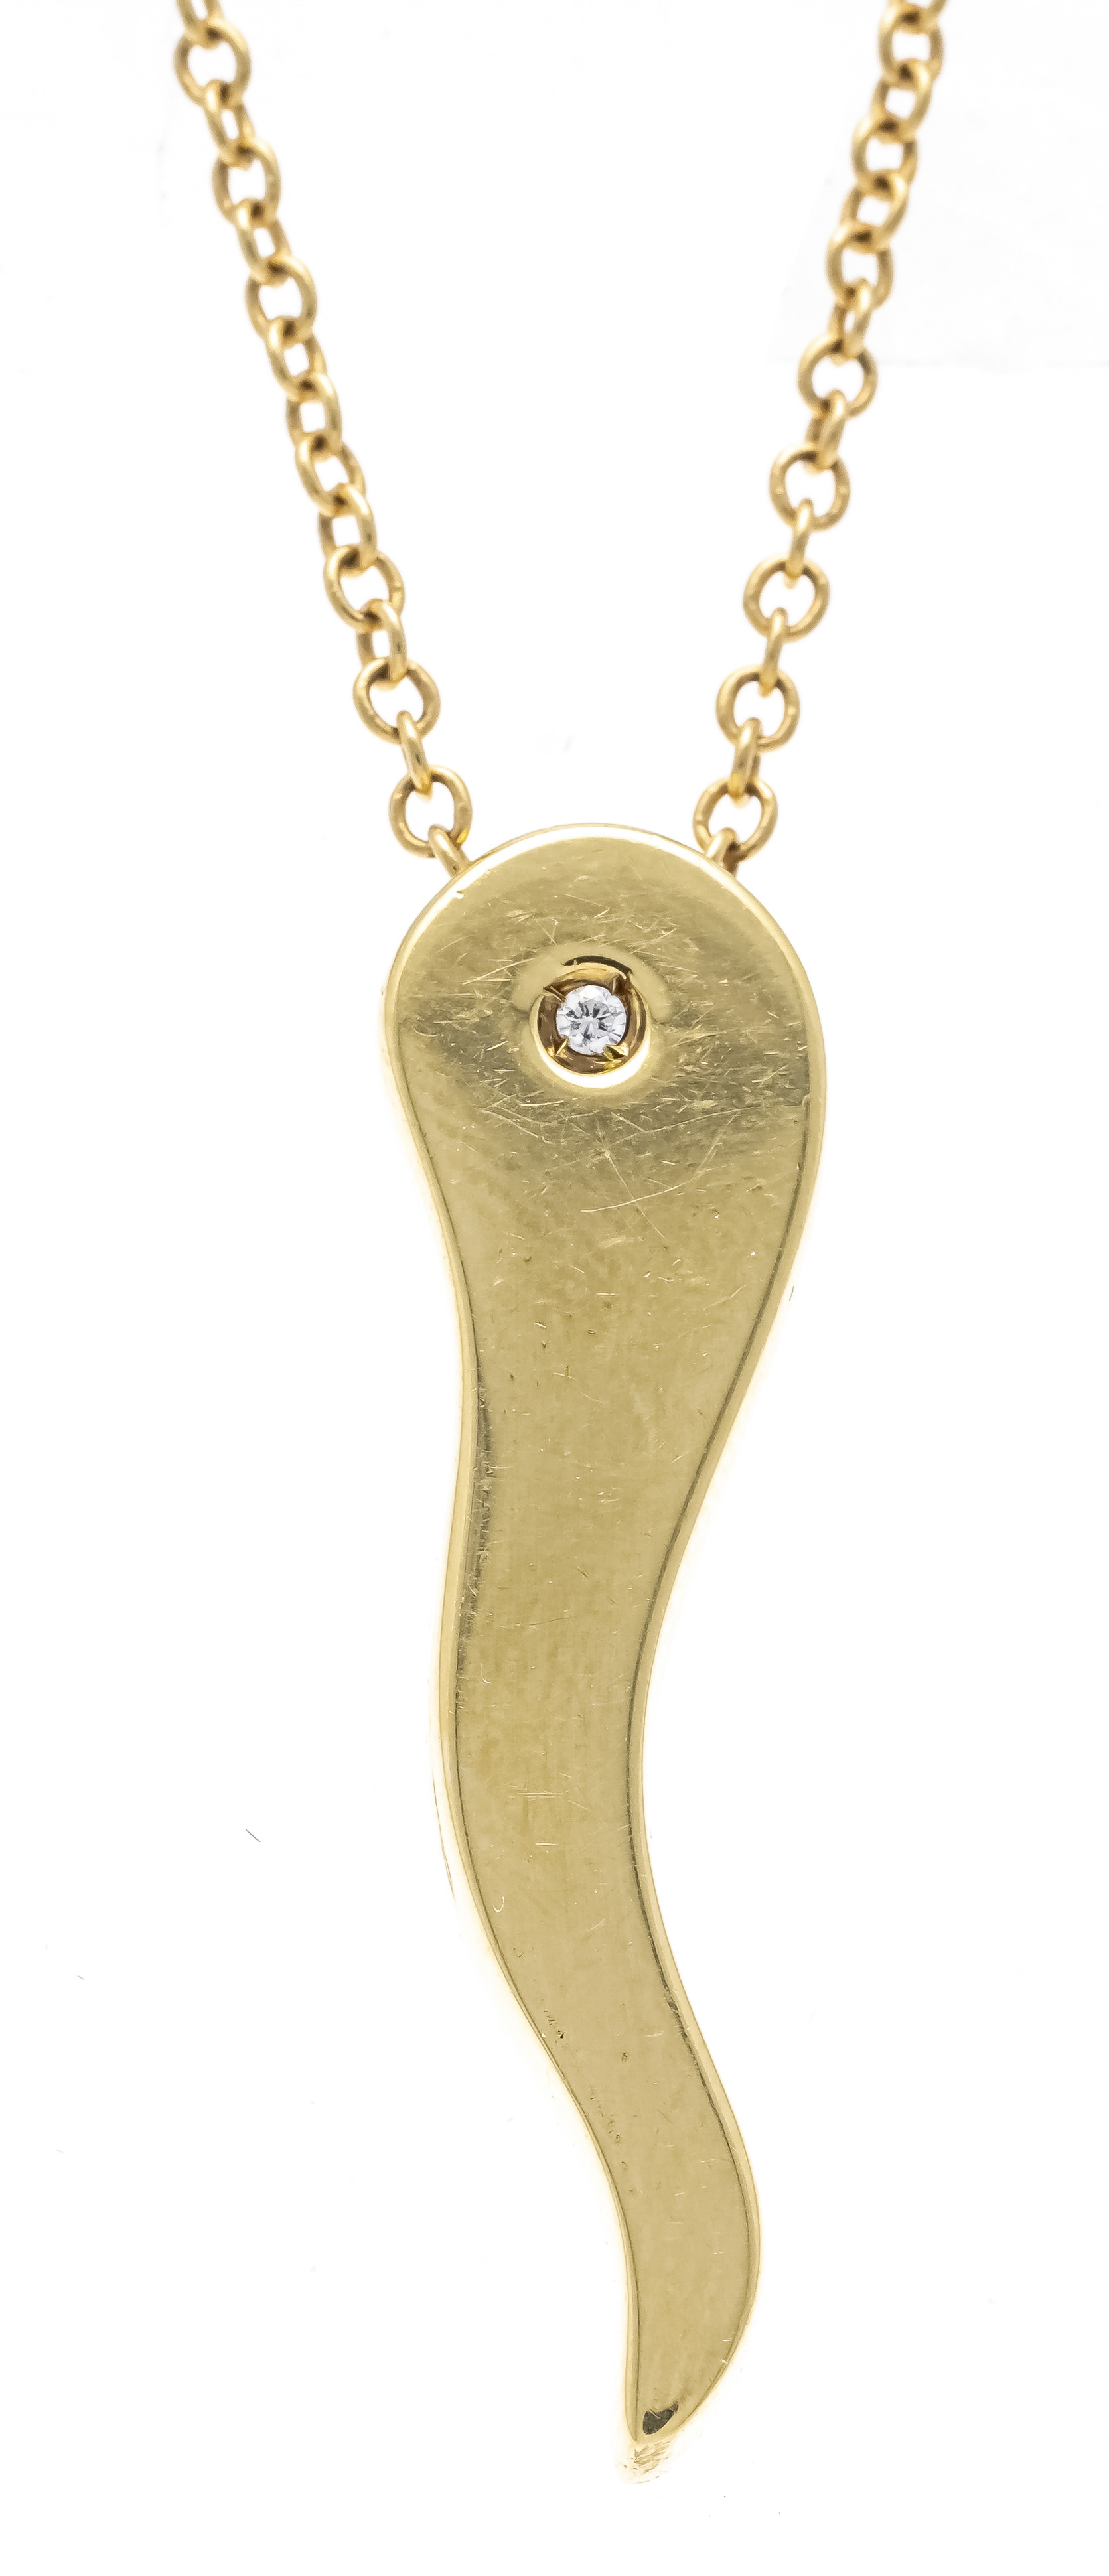 Salvini Gioielli diamond pendant GG 750/000 pepperoni, l. 32 mm, chain with spring ring, l. 45 cm,